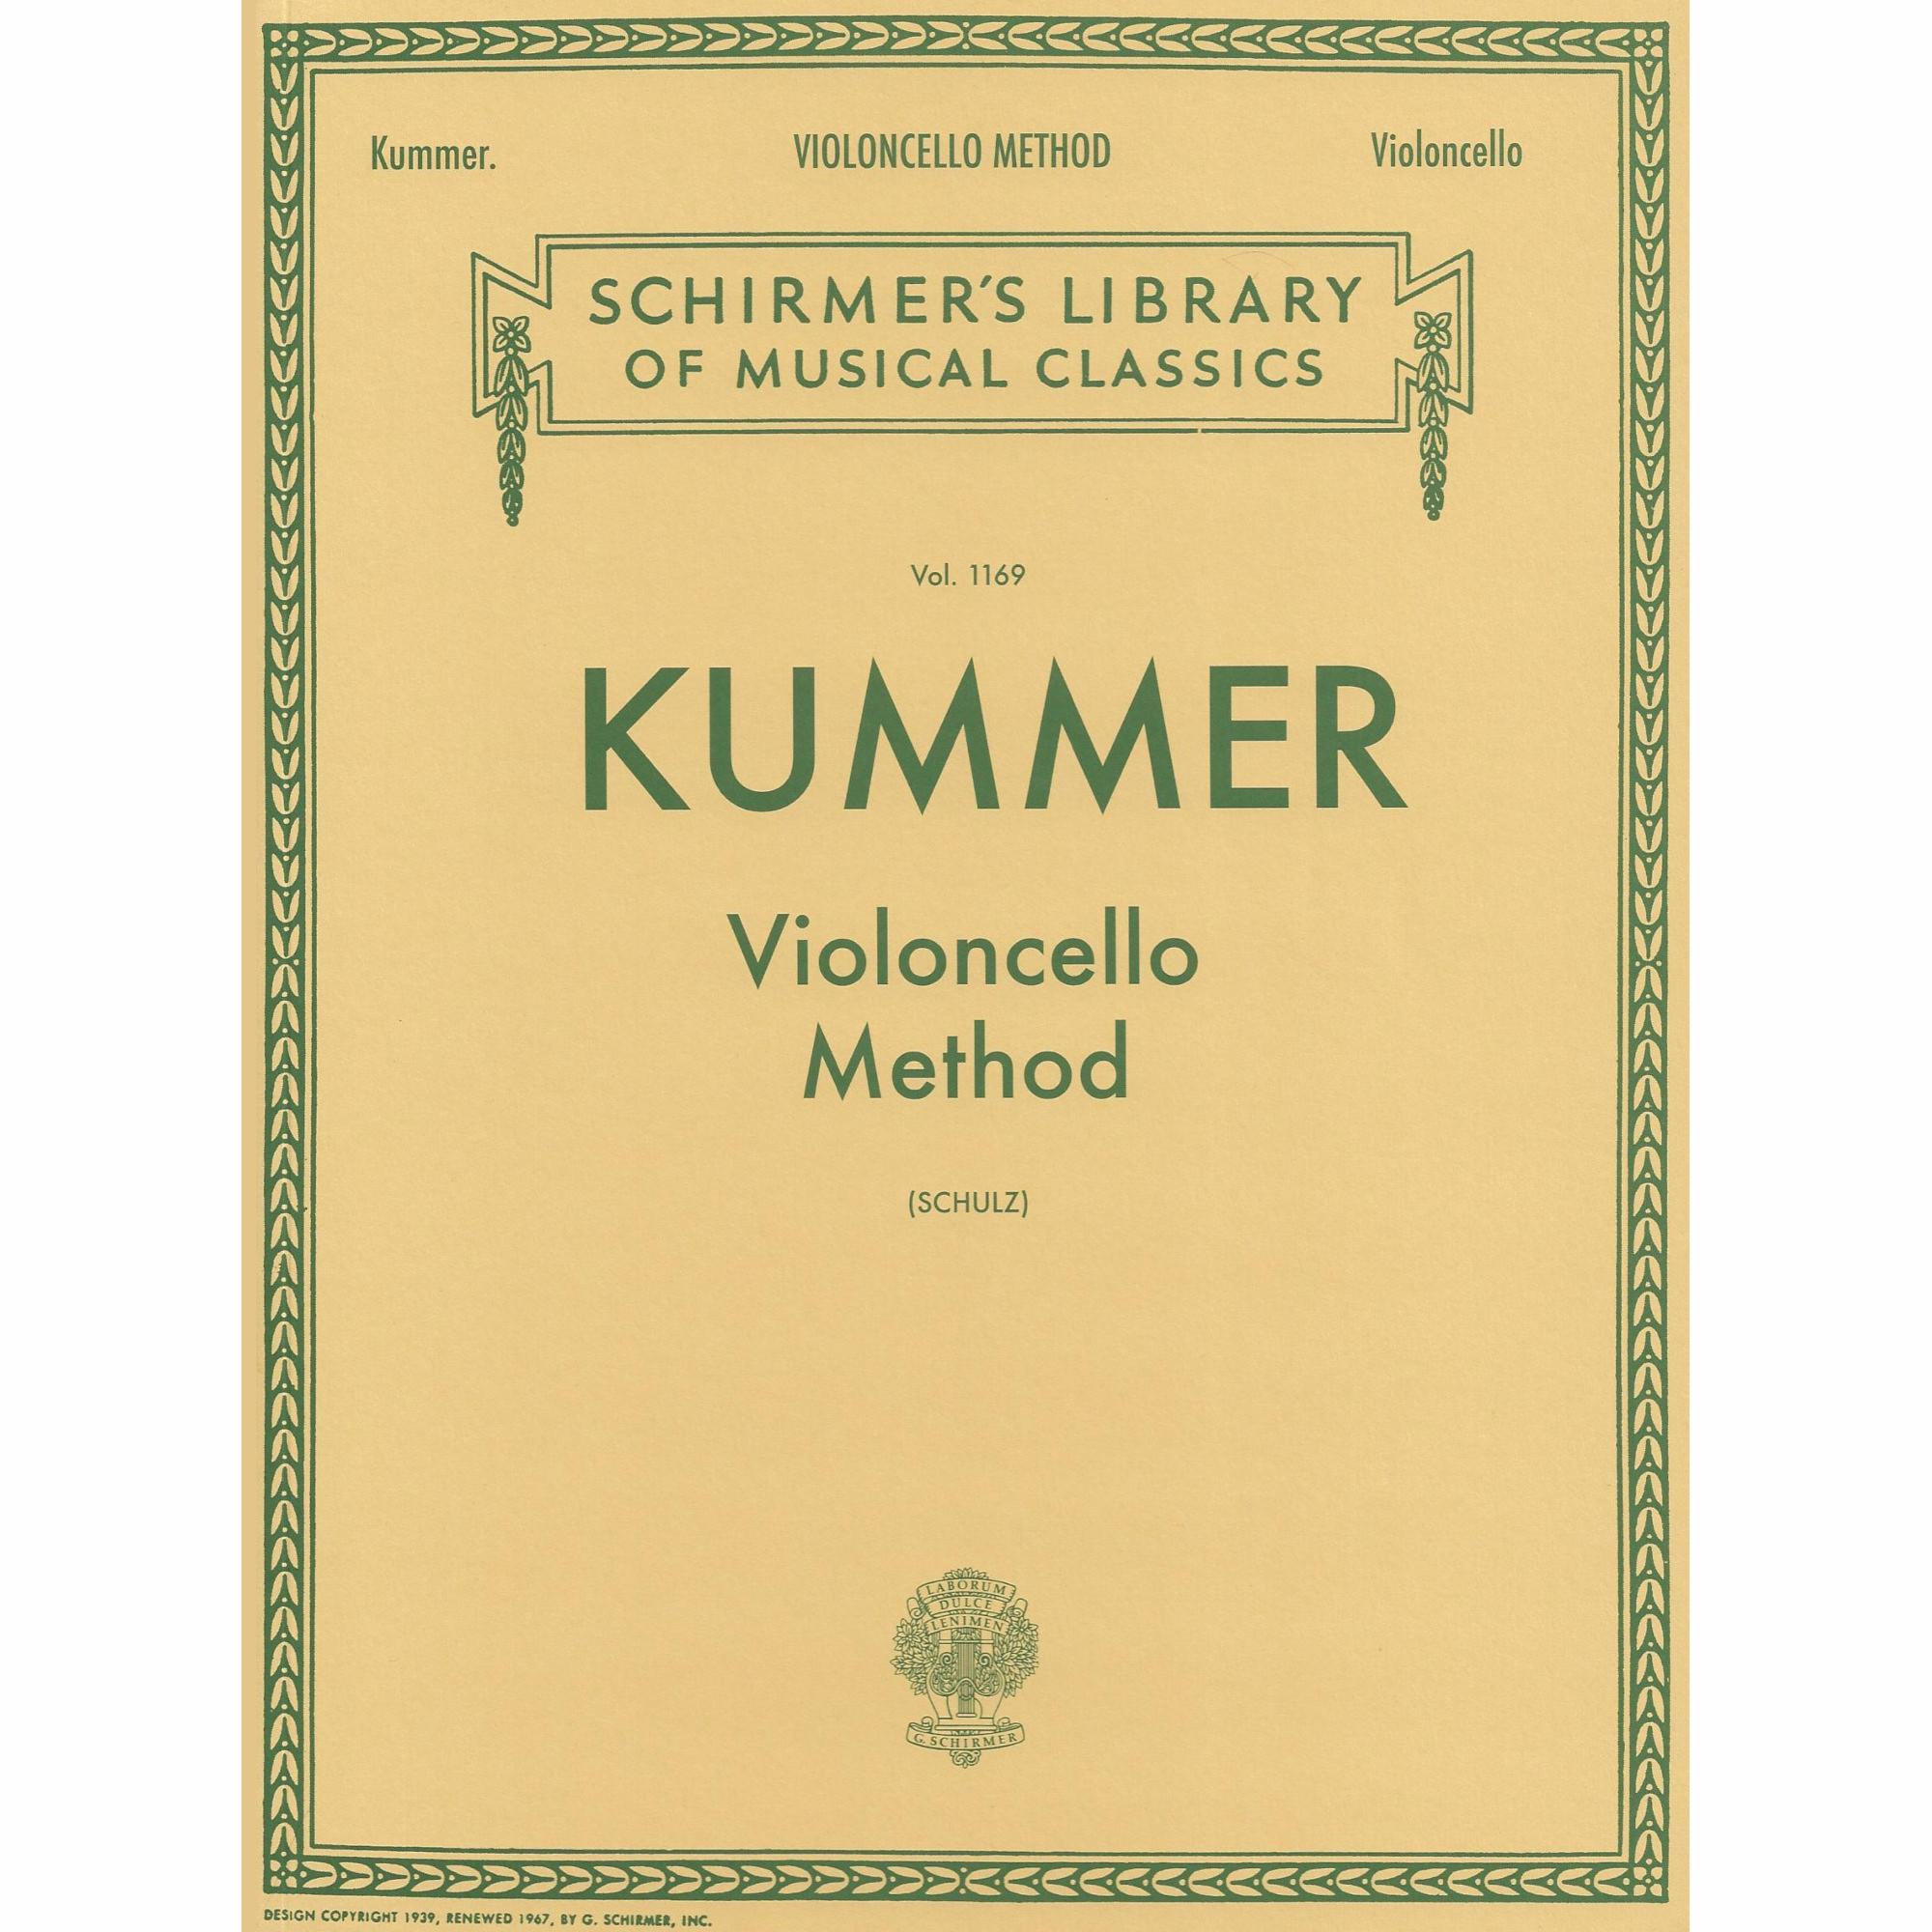 Kummer -- Violoncello Method, Op. 60